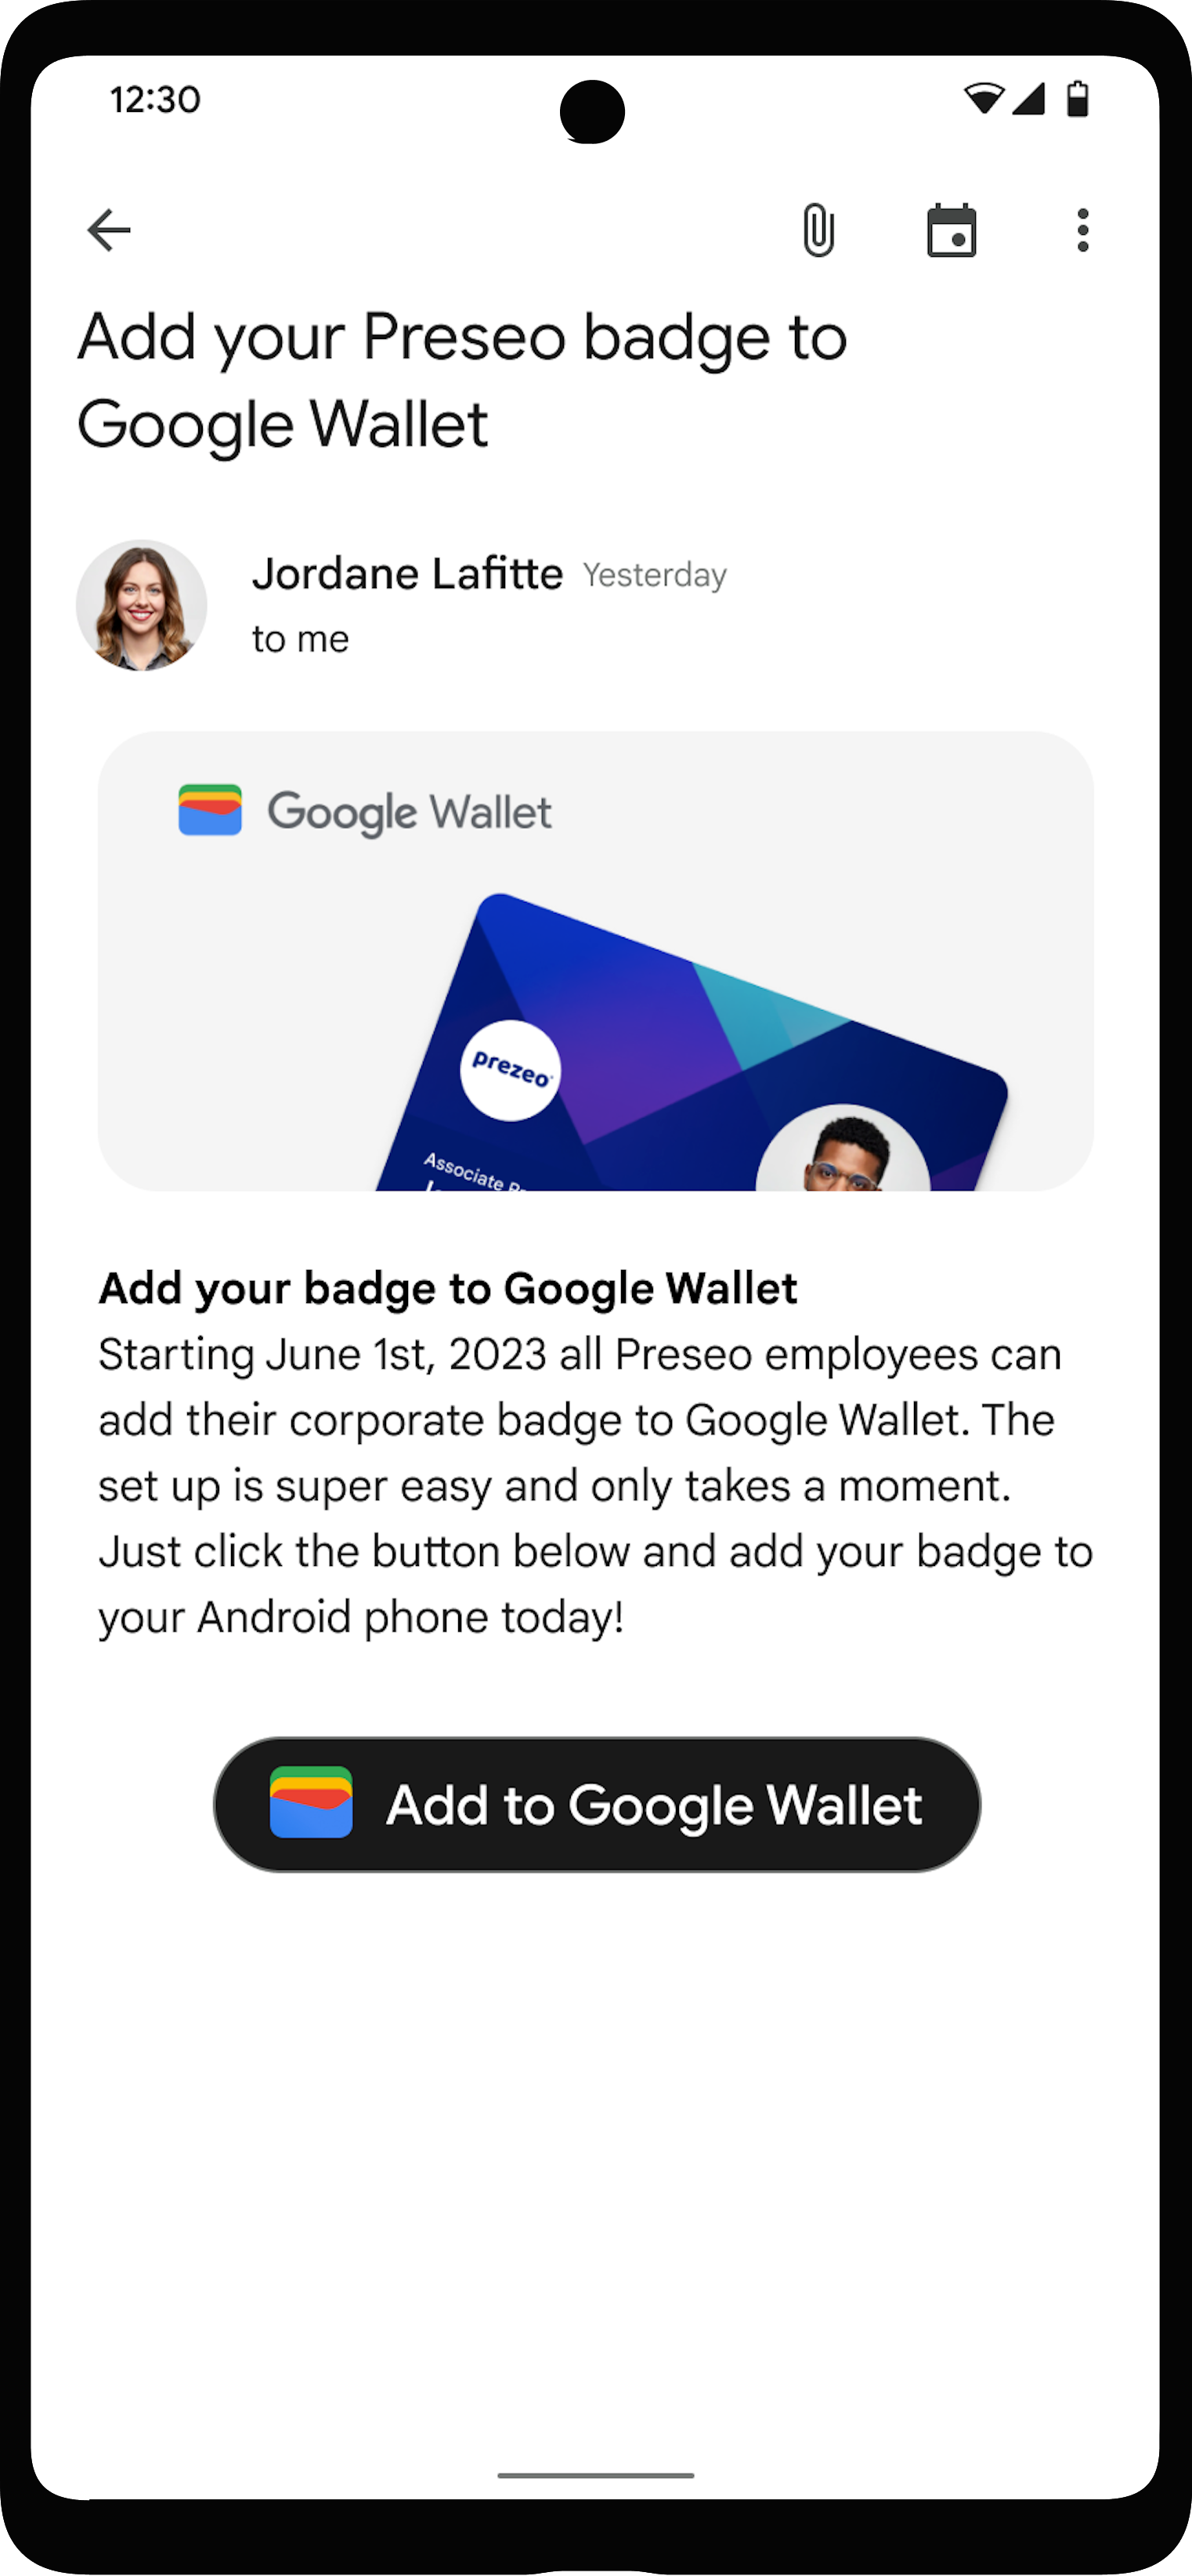 دکمه افزودن به Google Wallet که به طور برجسته در برنامه حساب کاربری قرار دارد.